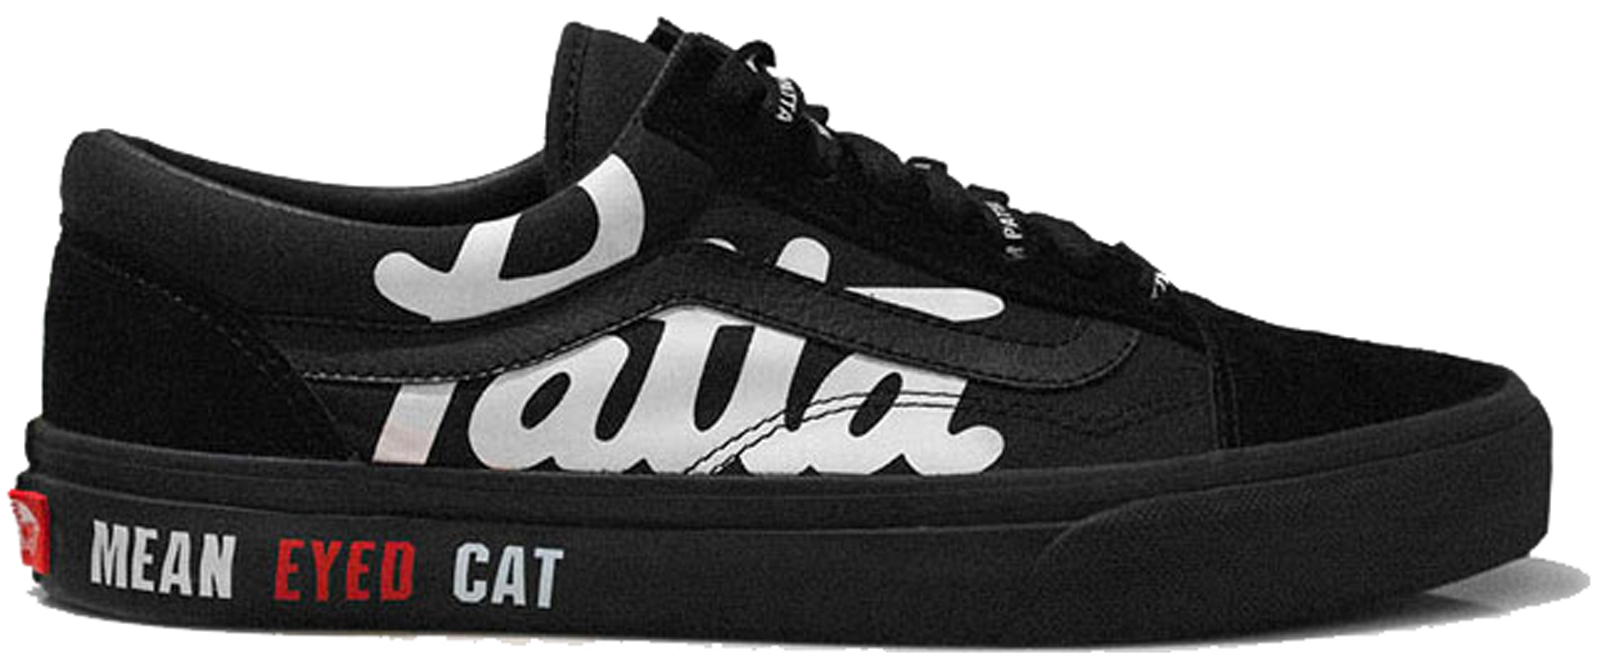 Vans Old Skool Patta x Beams Mean Eyed Cat sneakers